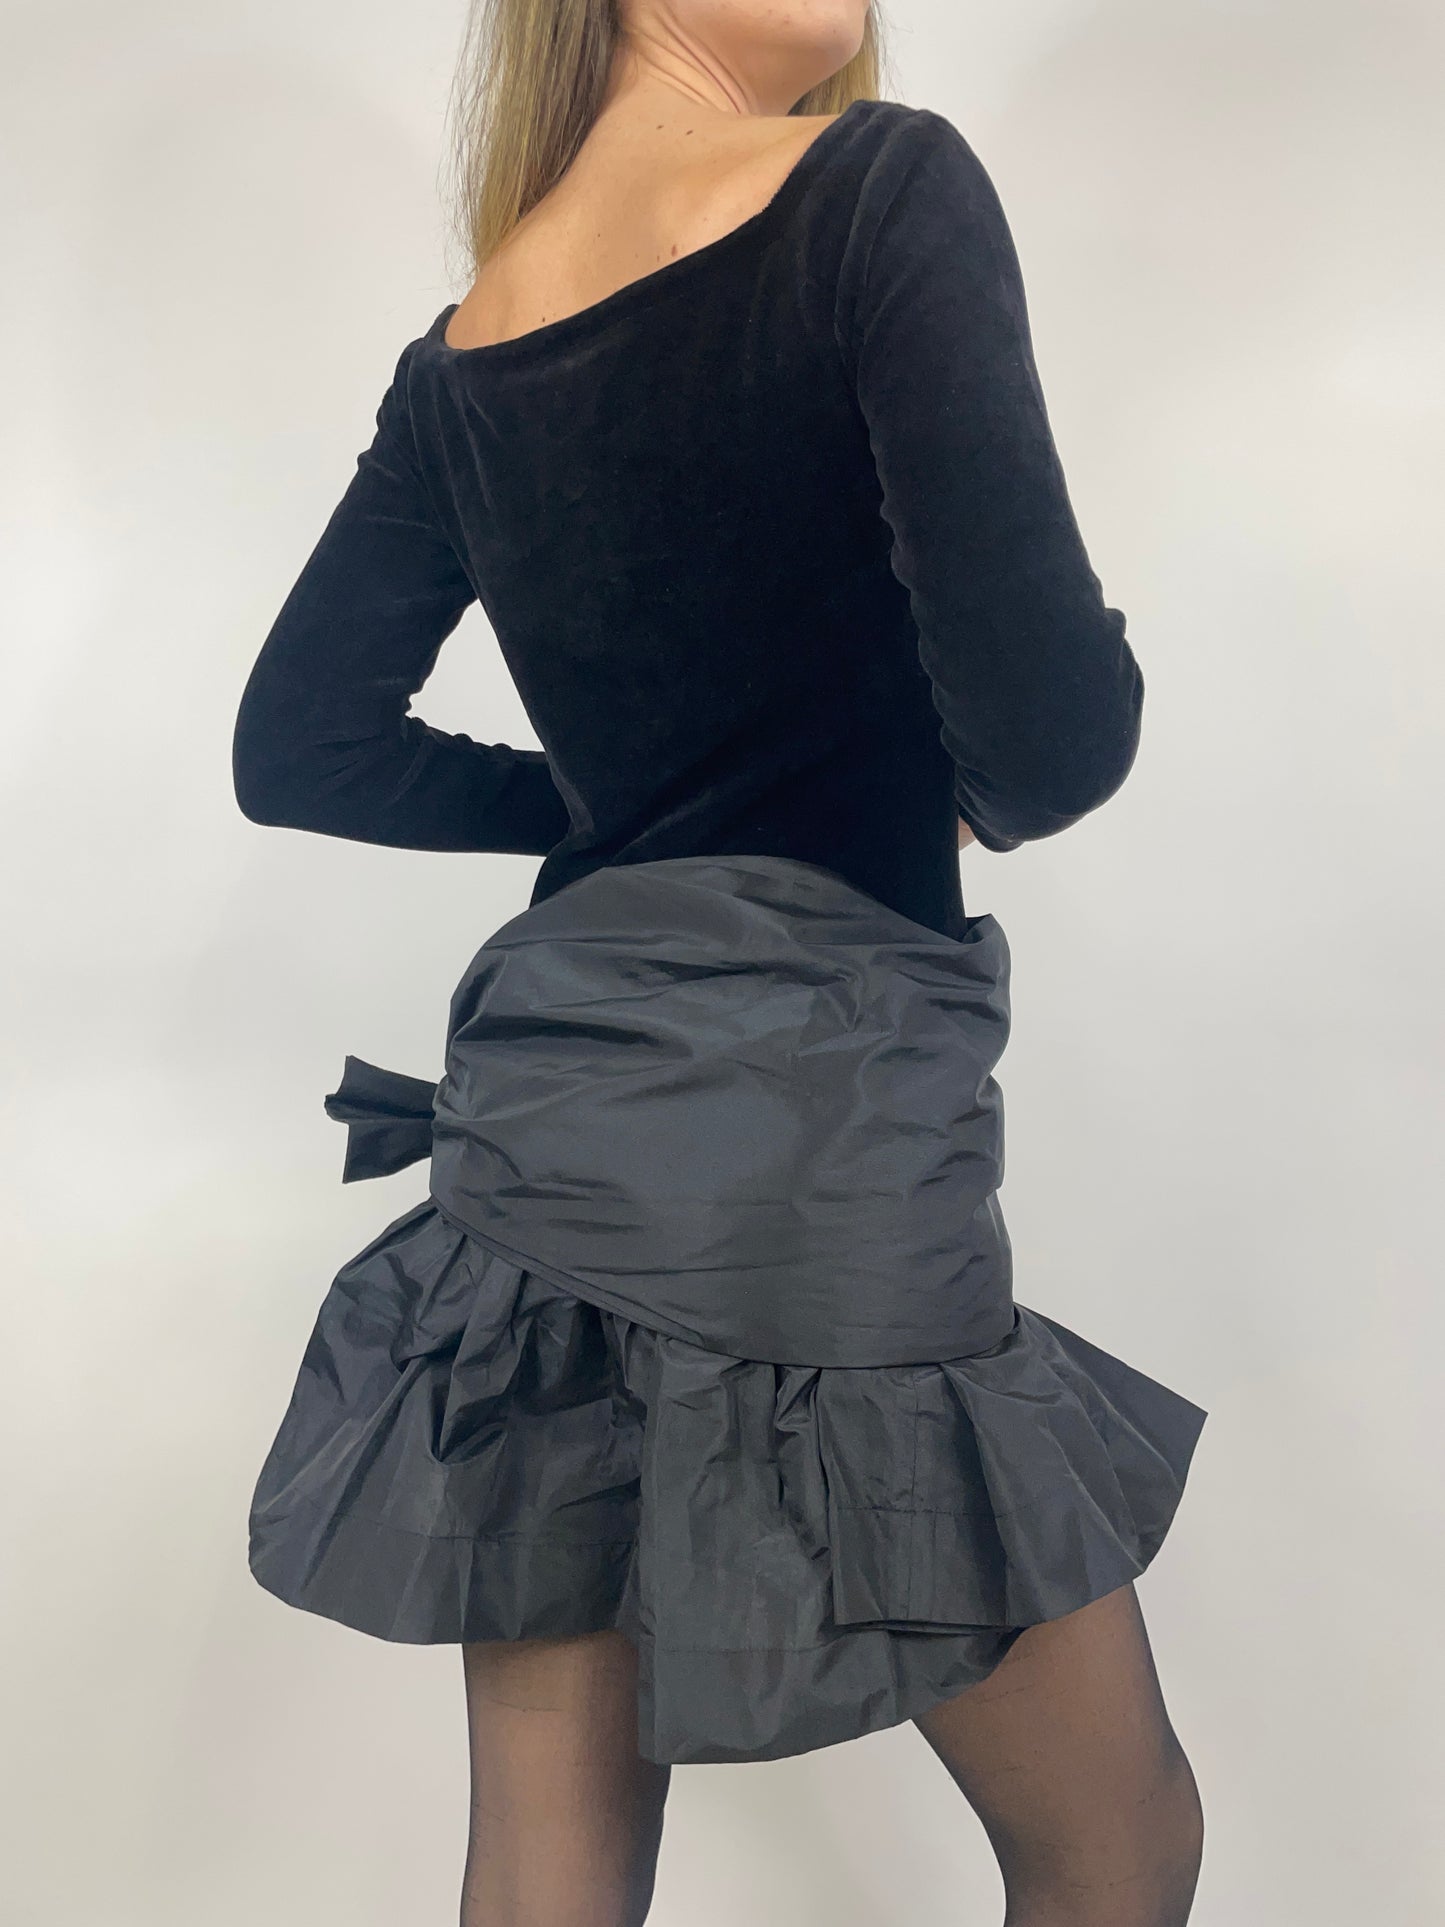 Bibi Laluna Kleid aus den 1980er Jahren